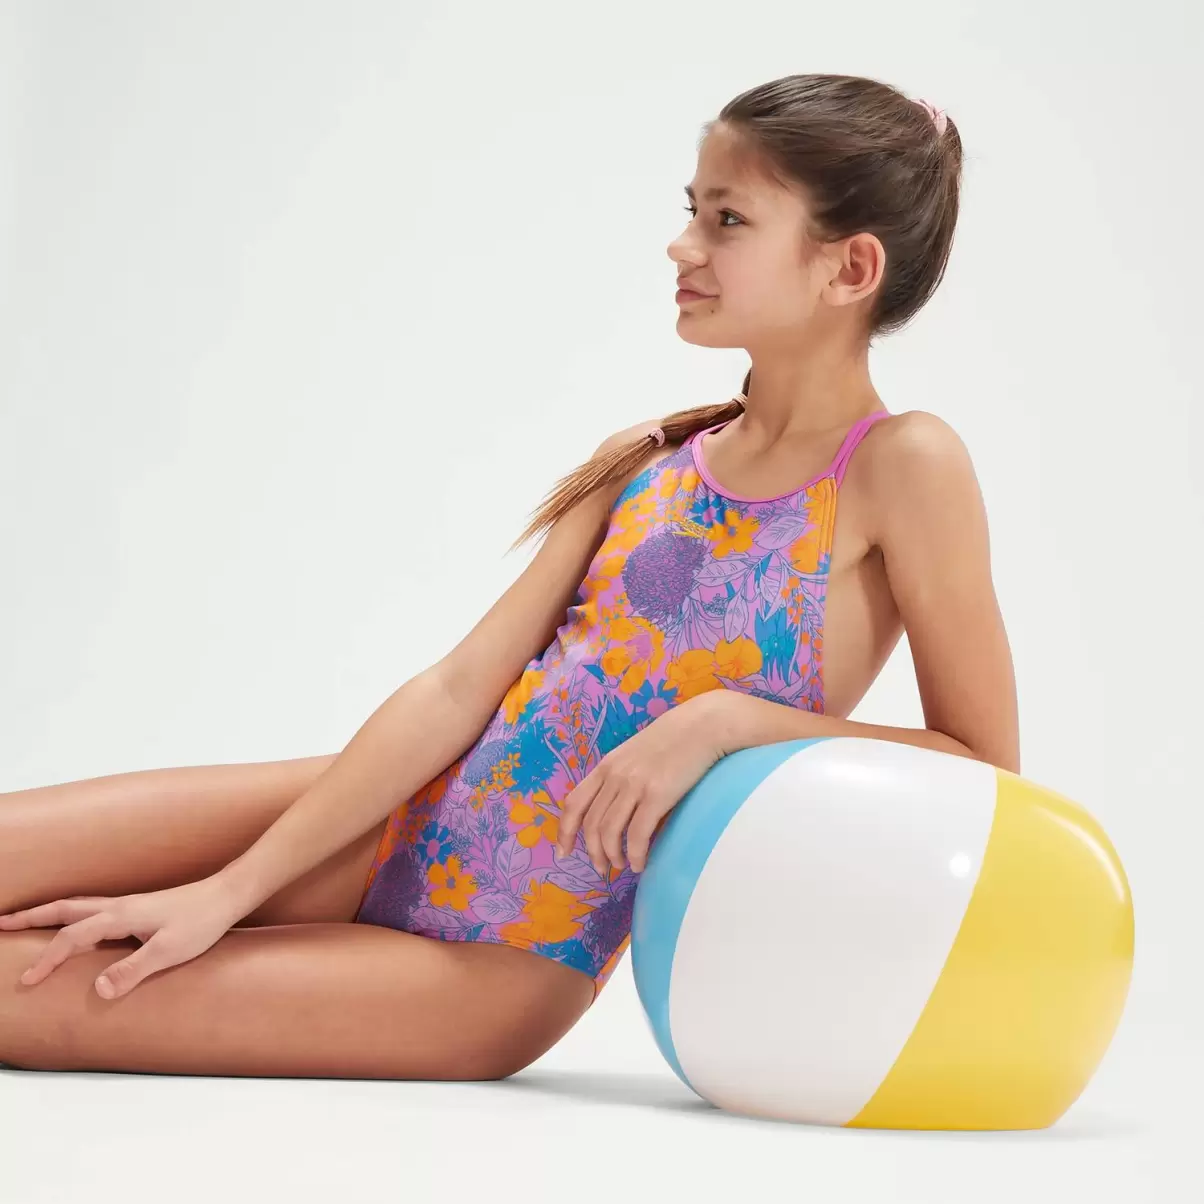 Speedo Mädchen Bademode Bedruckter Badeanzug Mit Doppelträgern Für Mädchen Violett/Mango Kinder - 2